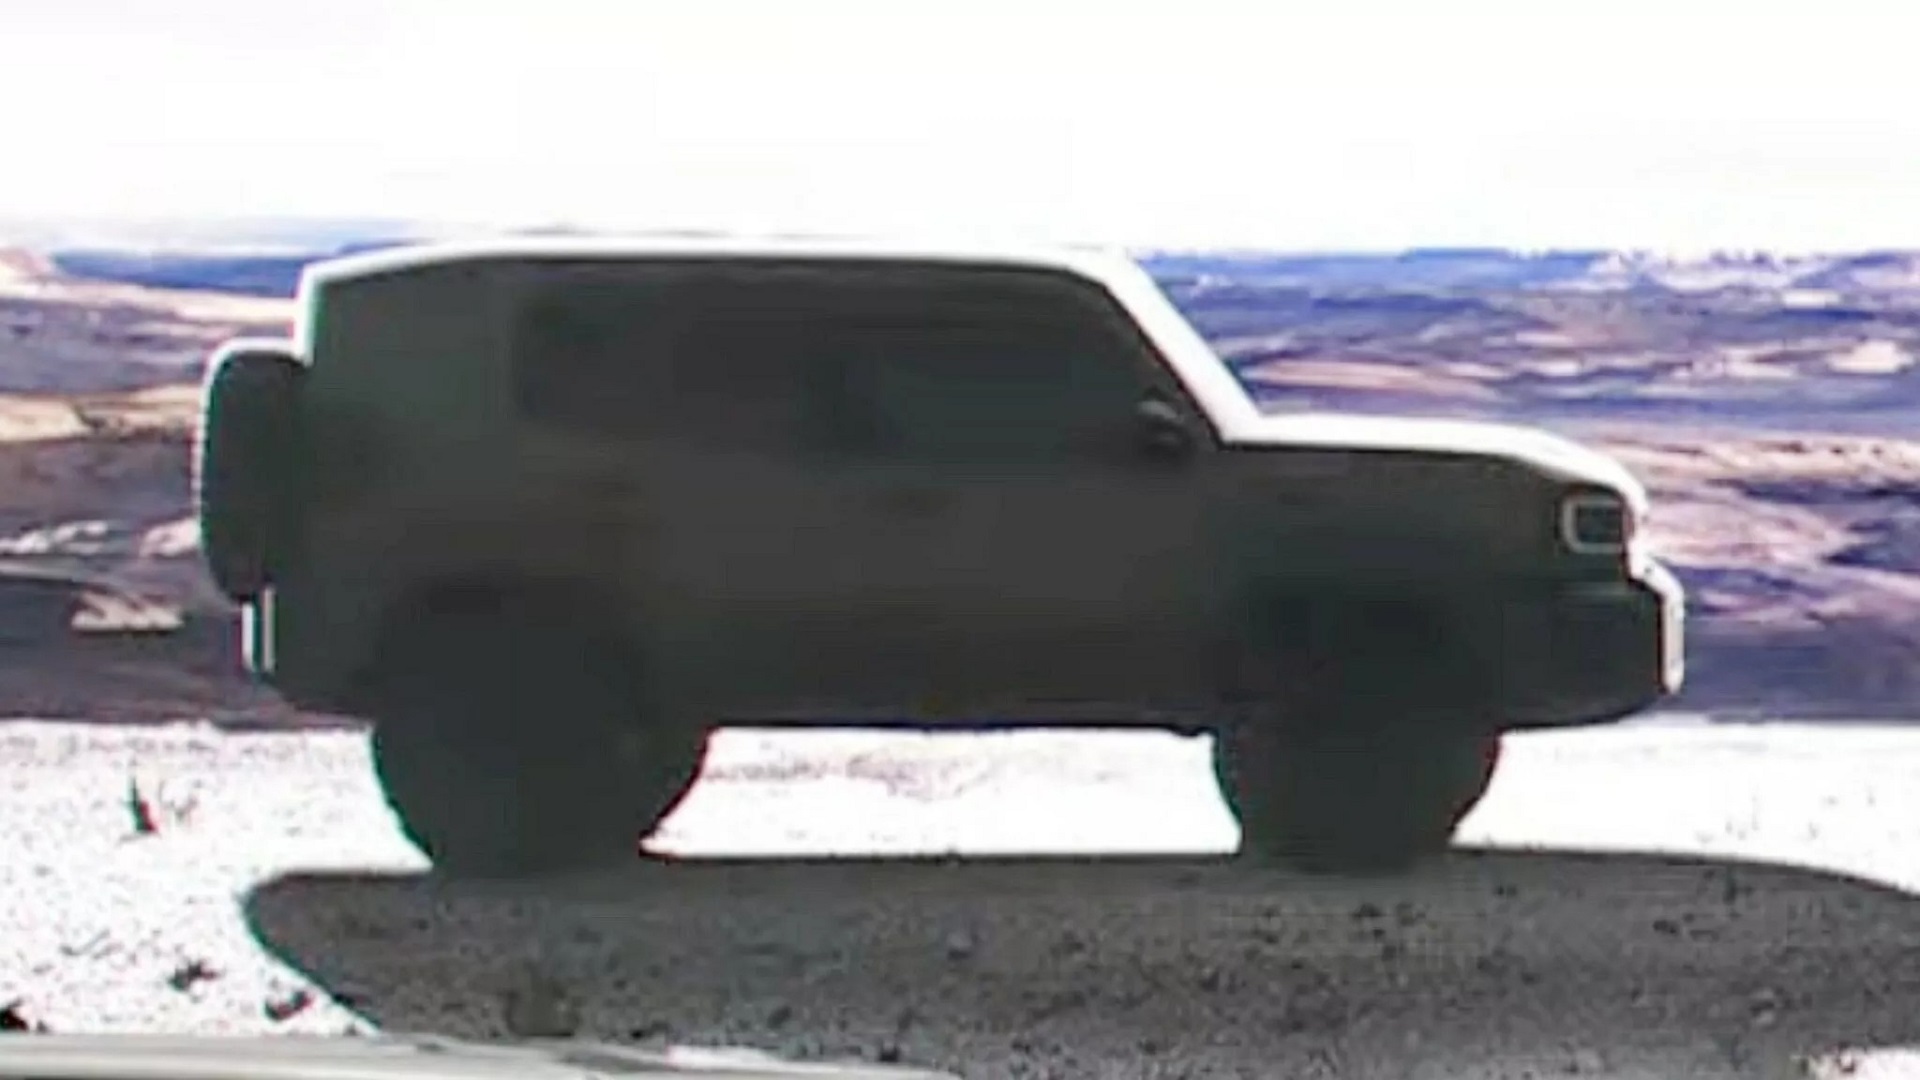 Toyota úp mở 2 mẫu SUV bí ẩn, một mẫu nhỏ như Jimny dễ thành hàng 'hot' - Ảnh 3.